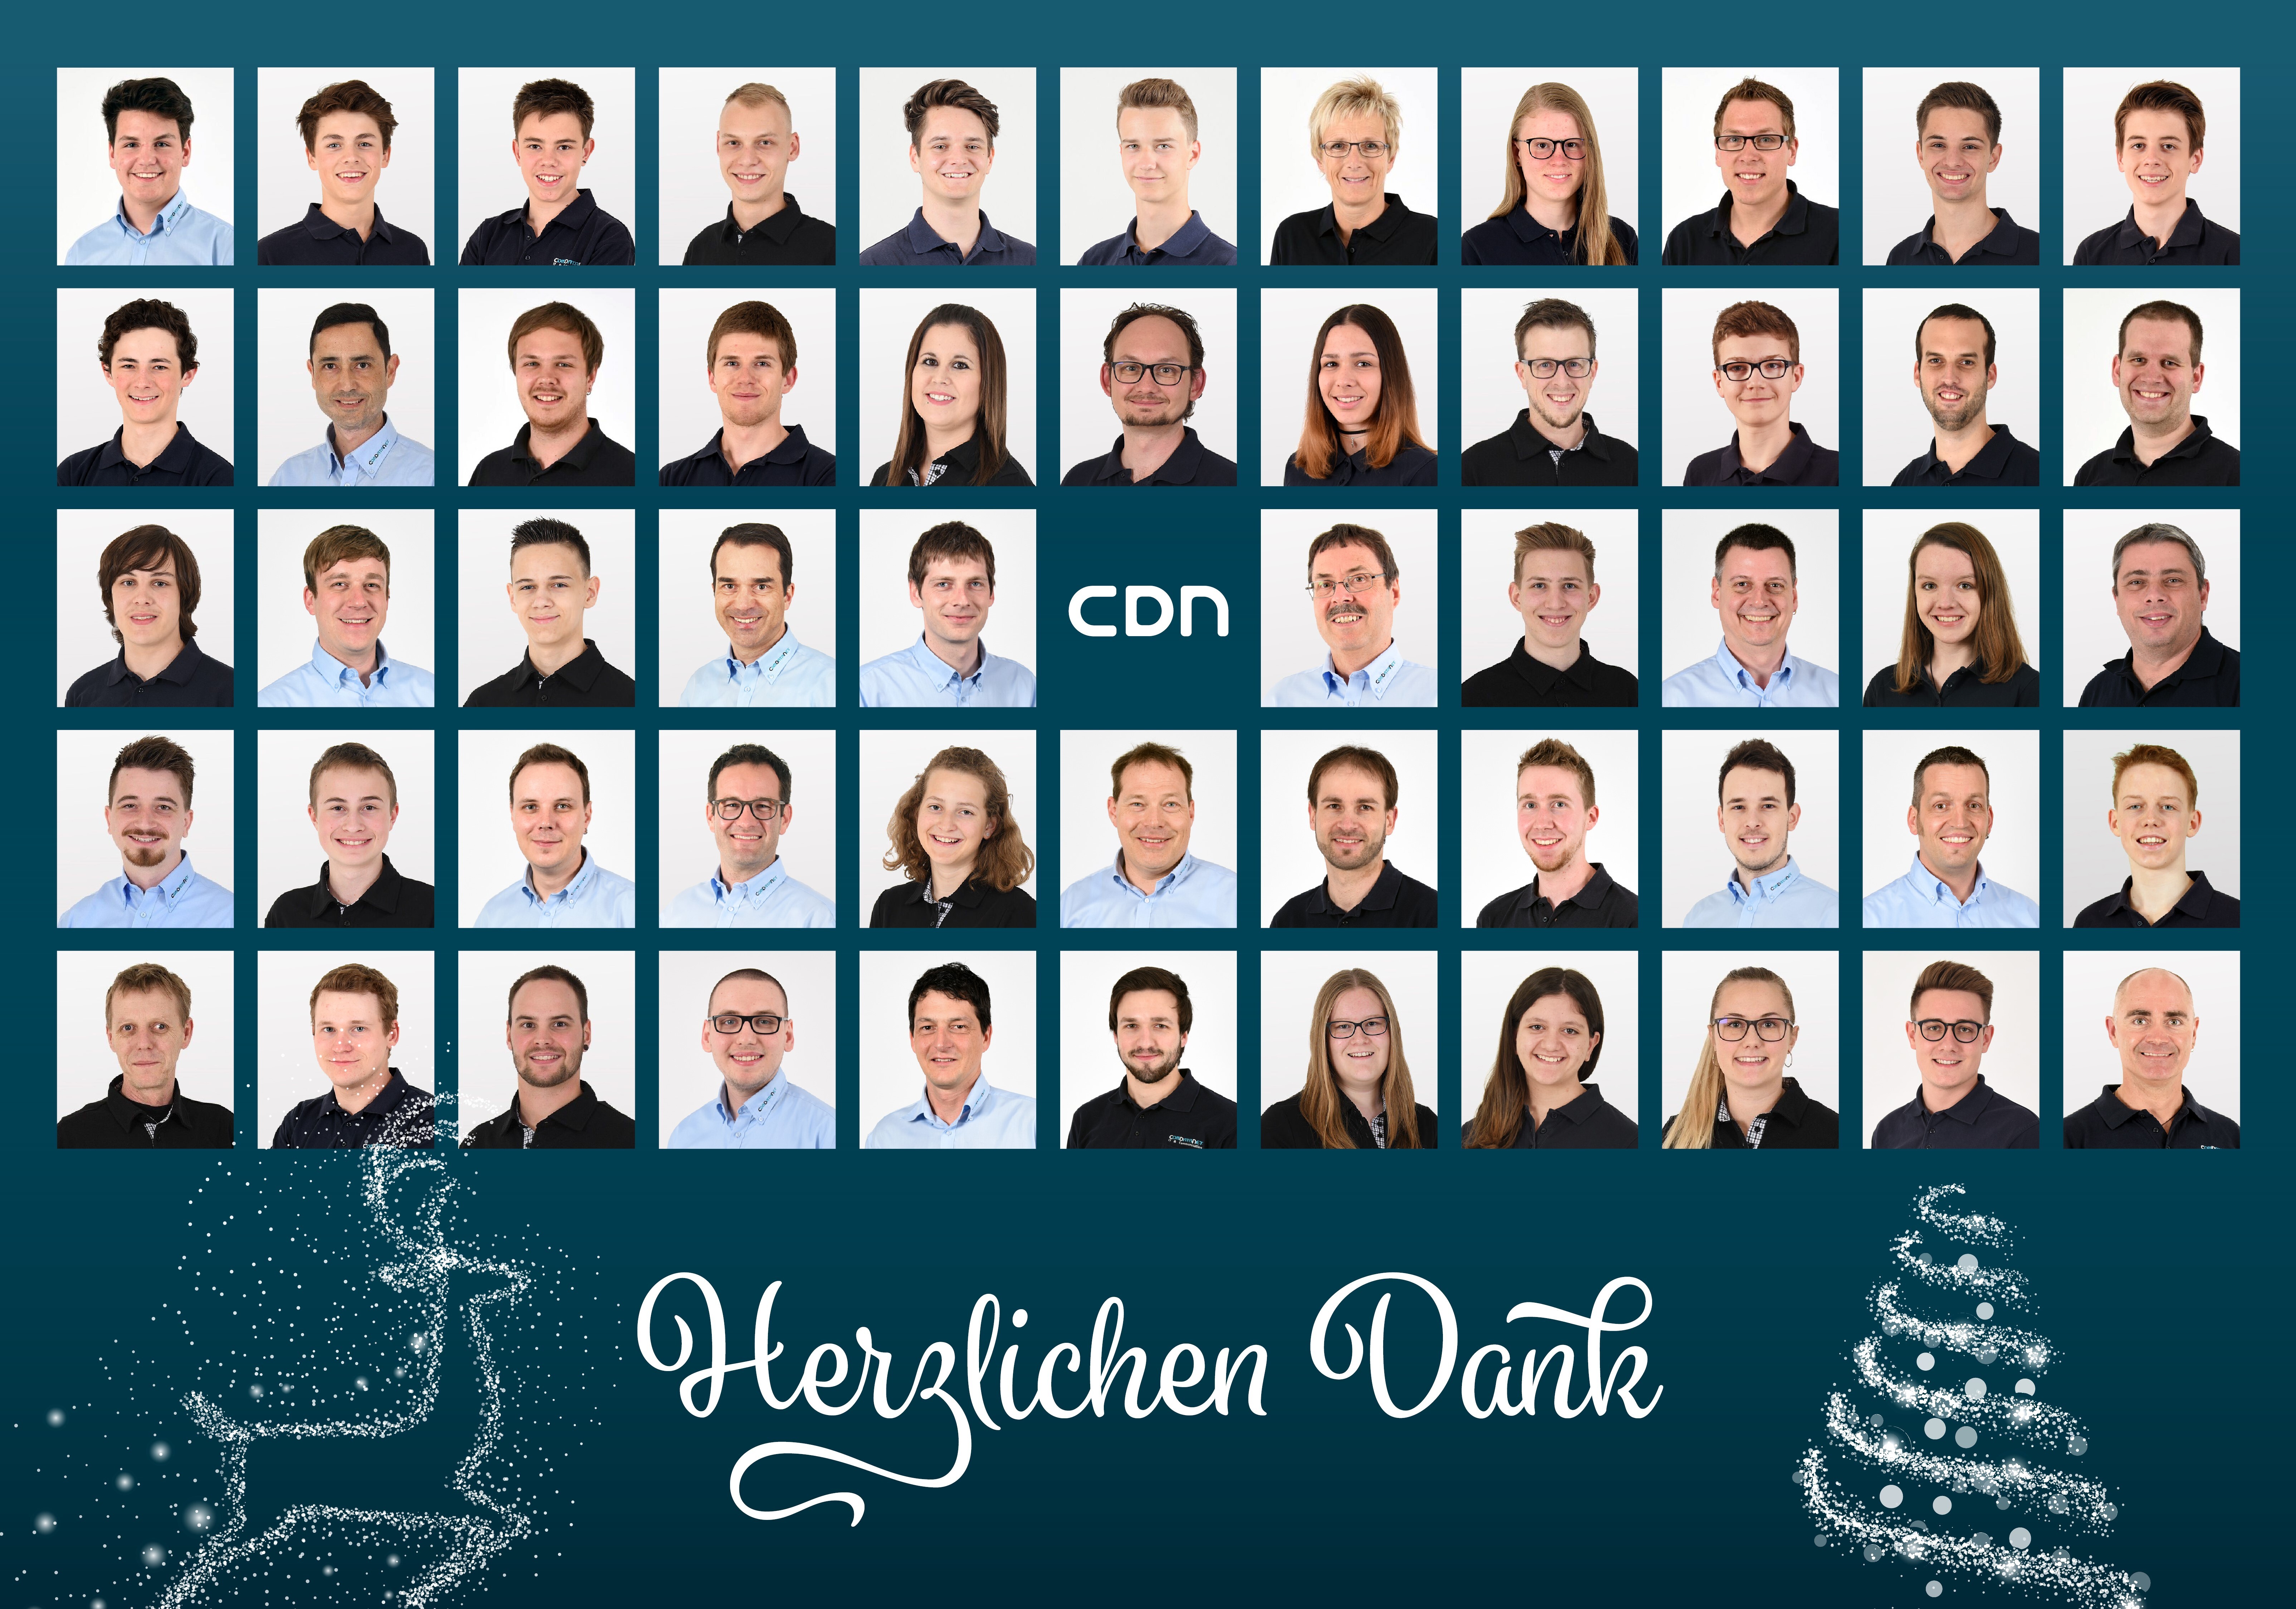 CDN Weihnachtskarte 2020 WEB zugeschnitten